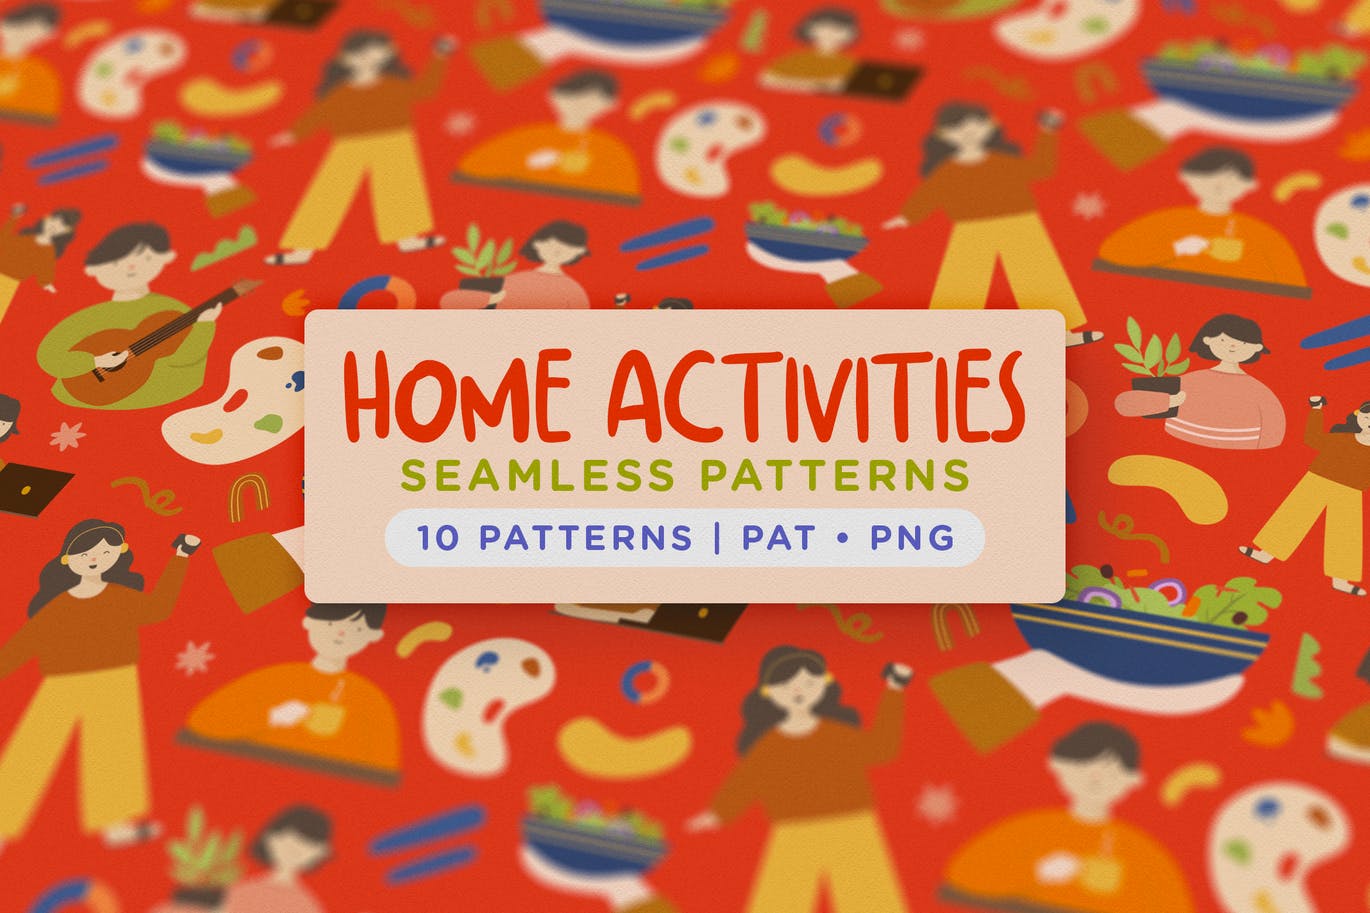 可爱趣味性居家活动主题无缝涂鸦图案 Home Activity Seamless Patterns